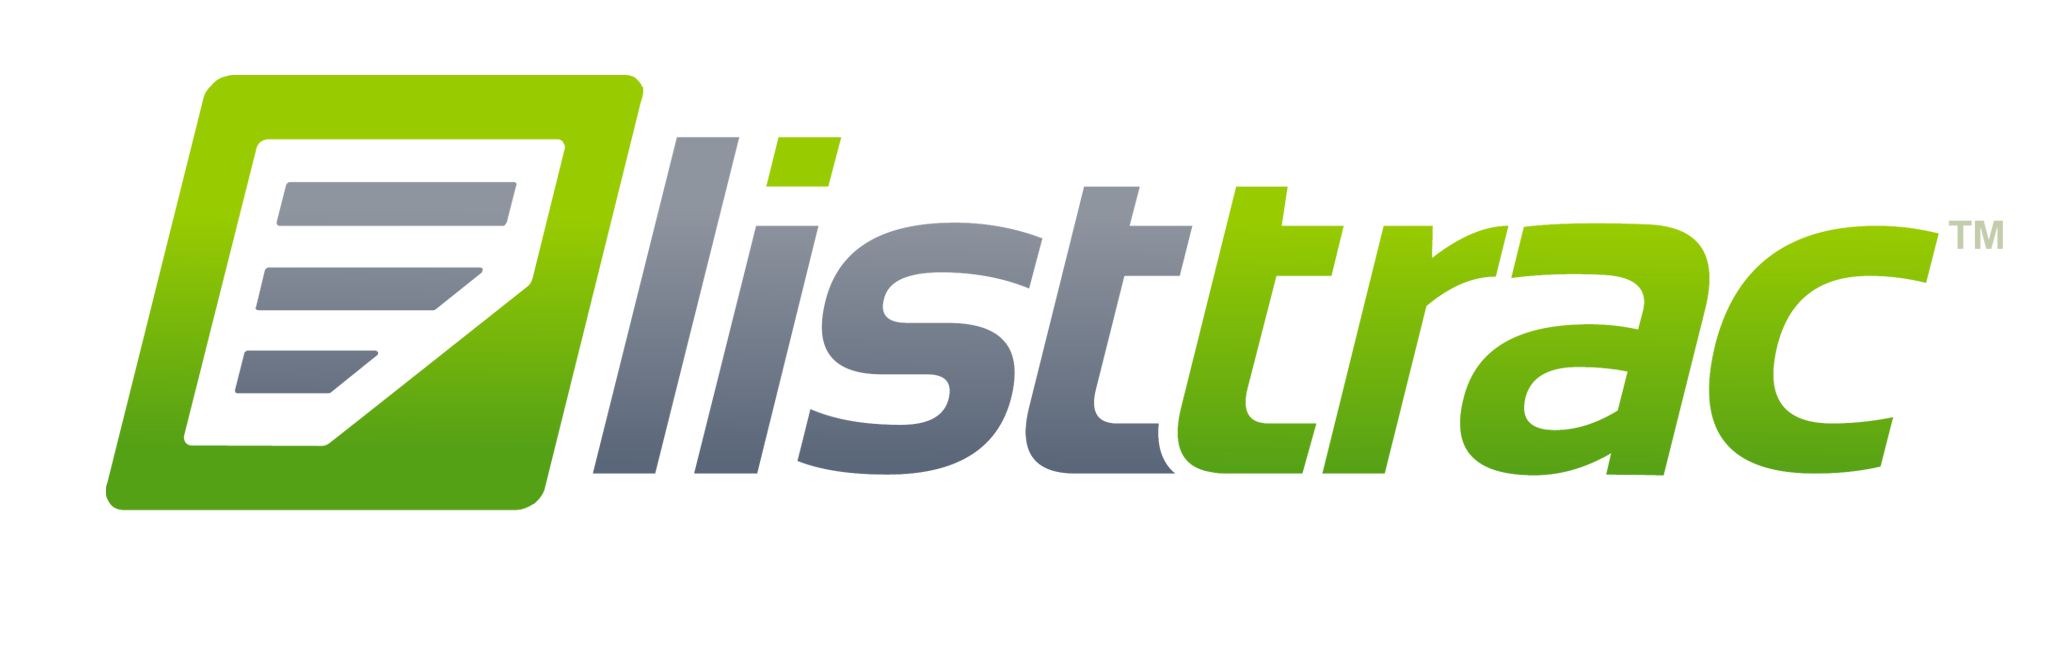 Listtrac logo12